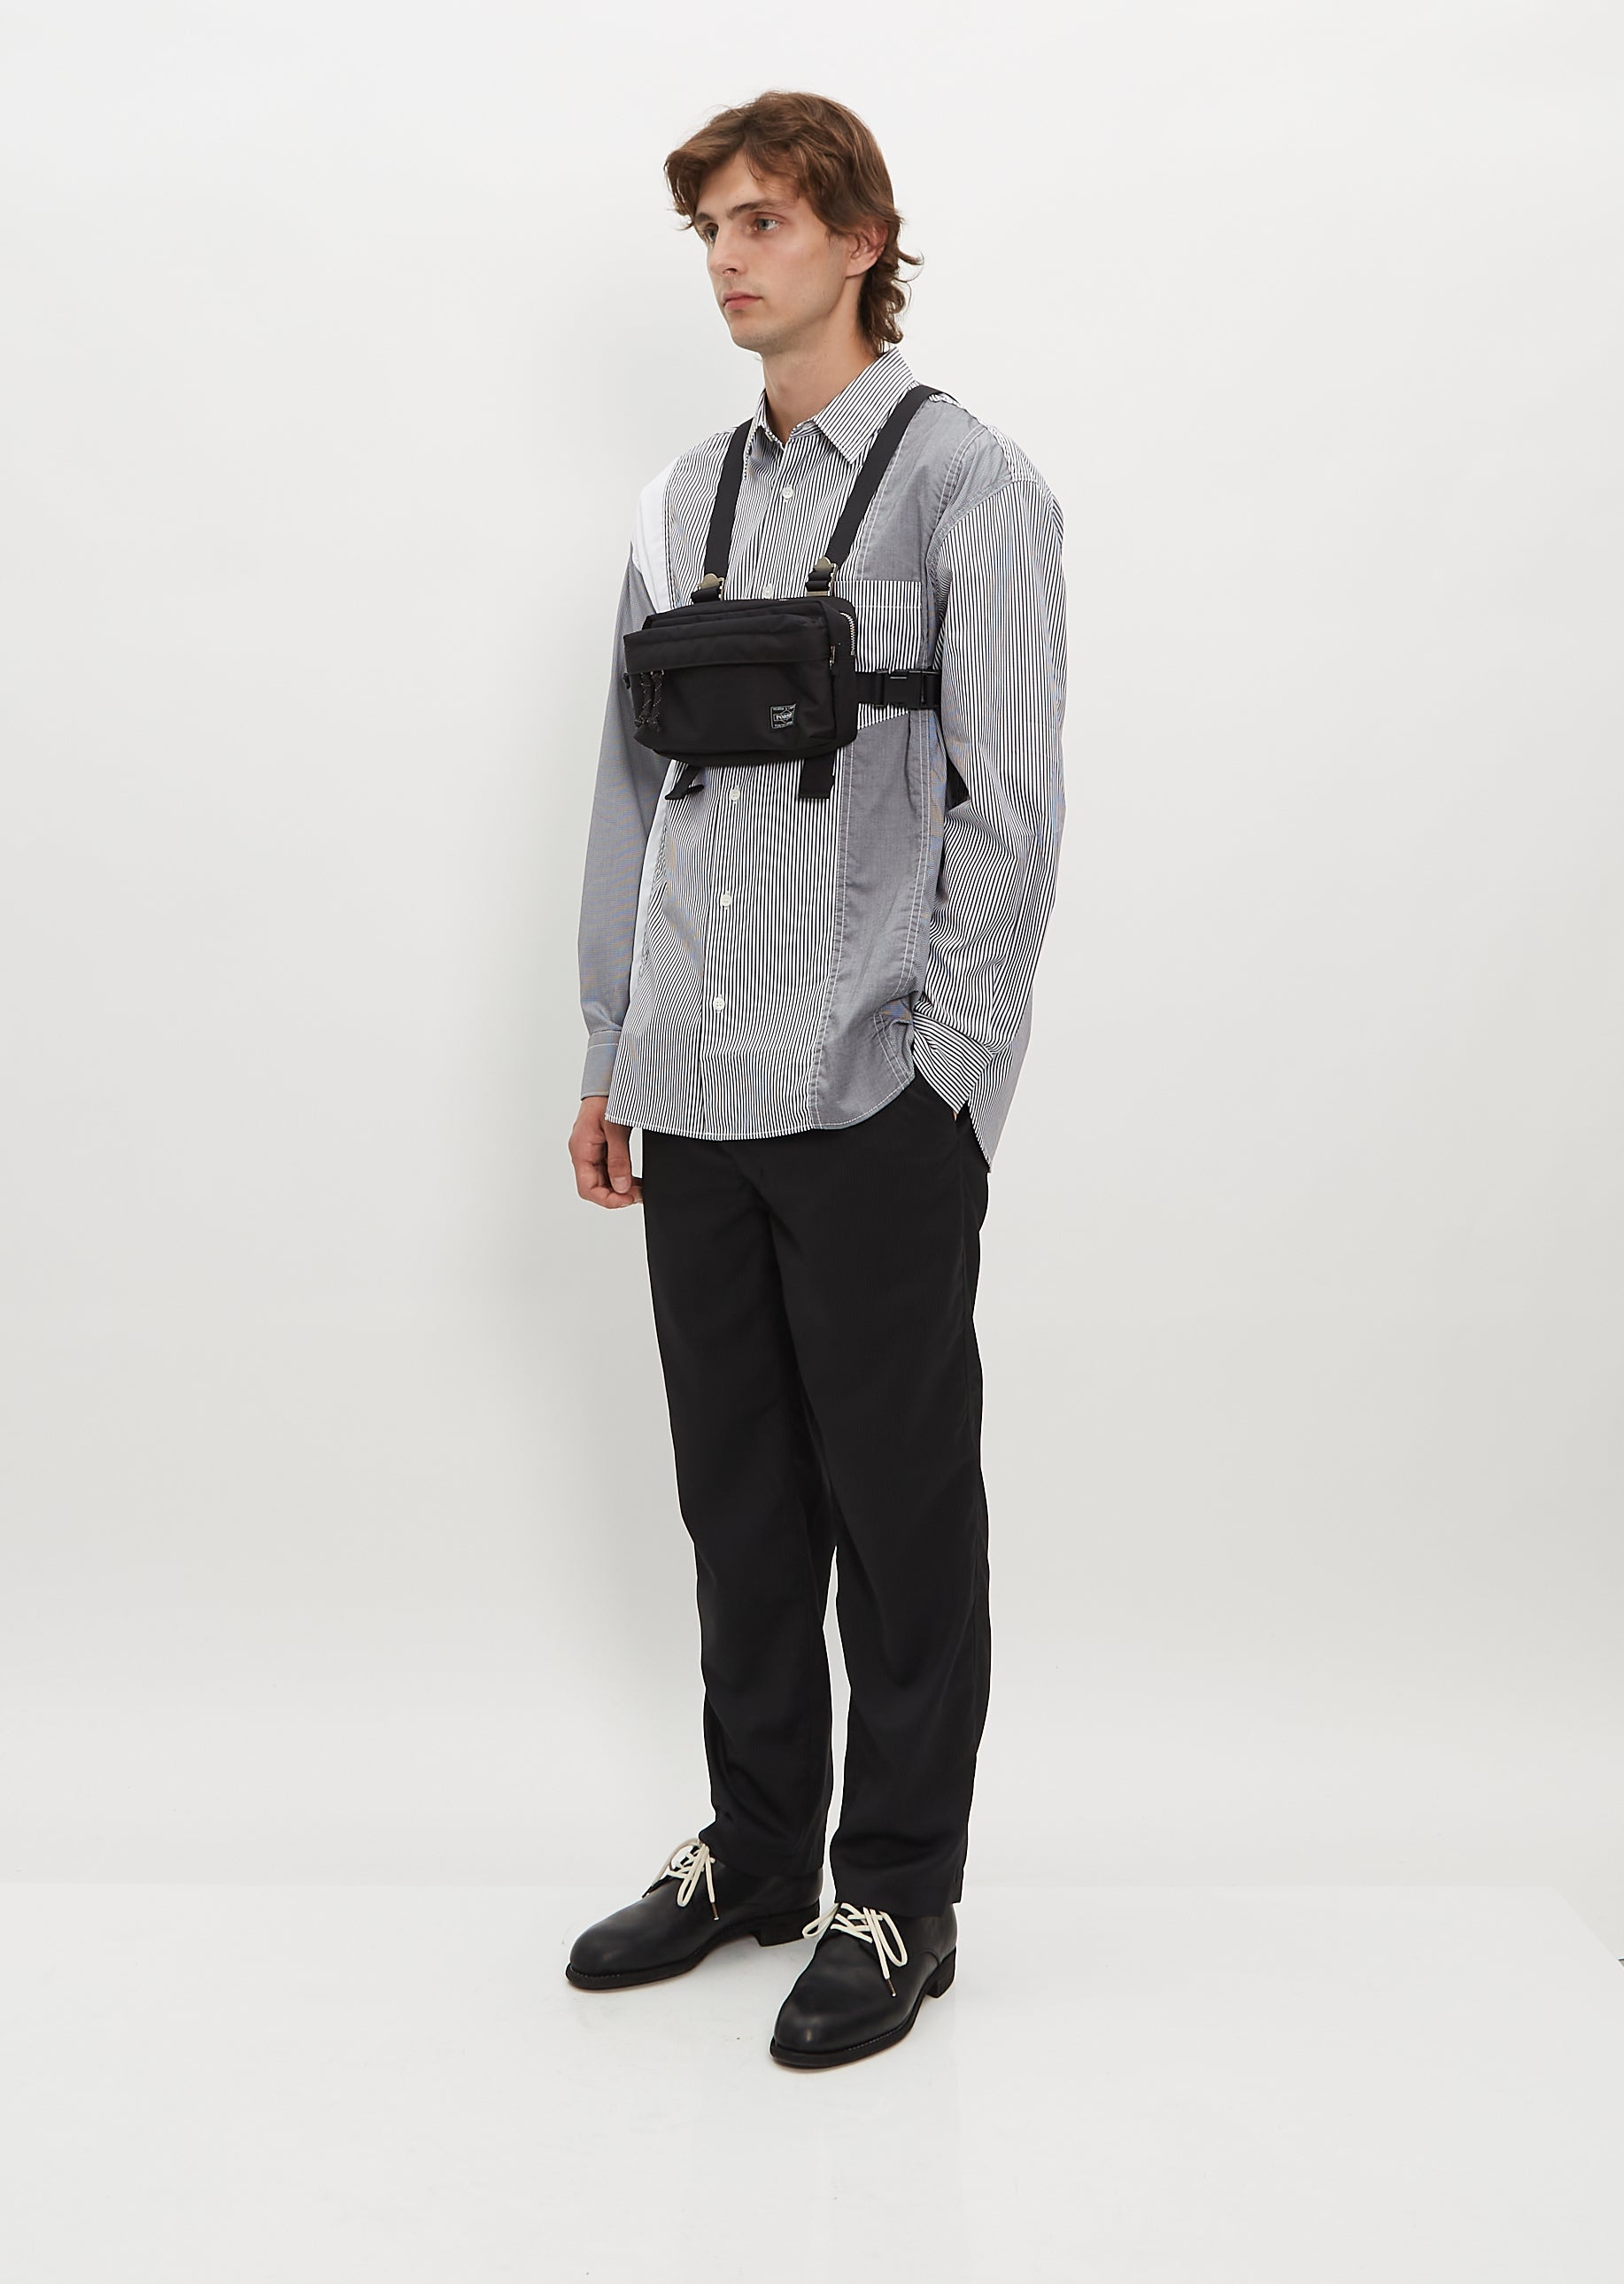 Porter Front Harness Bag — Black – La Garçonne